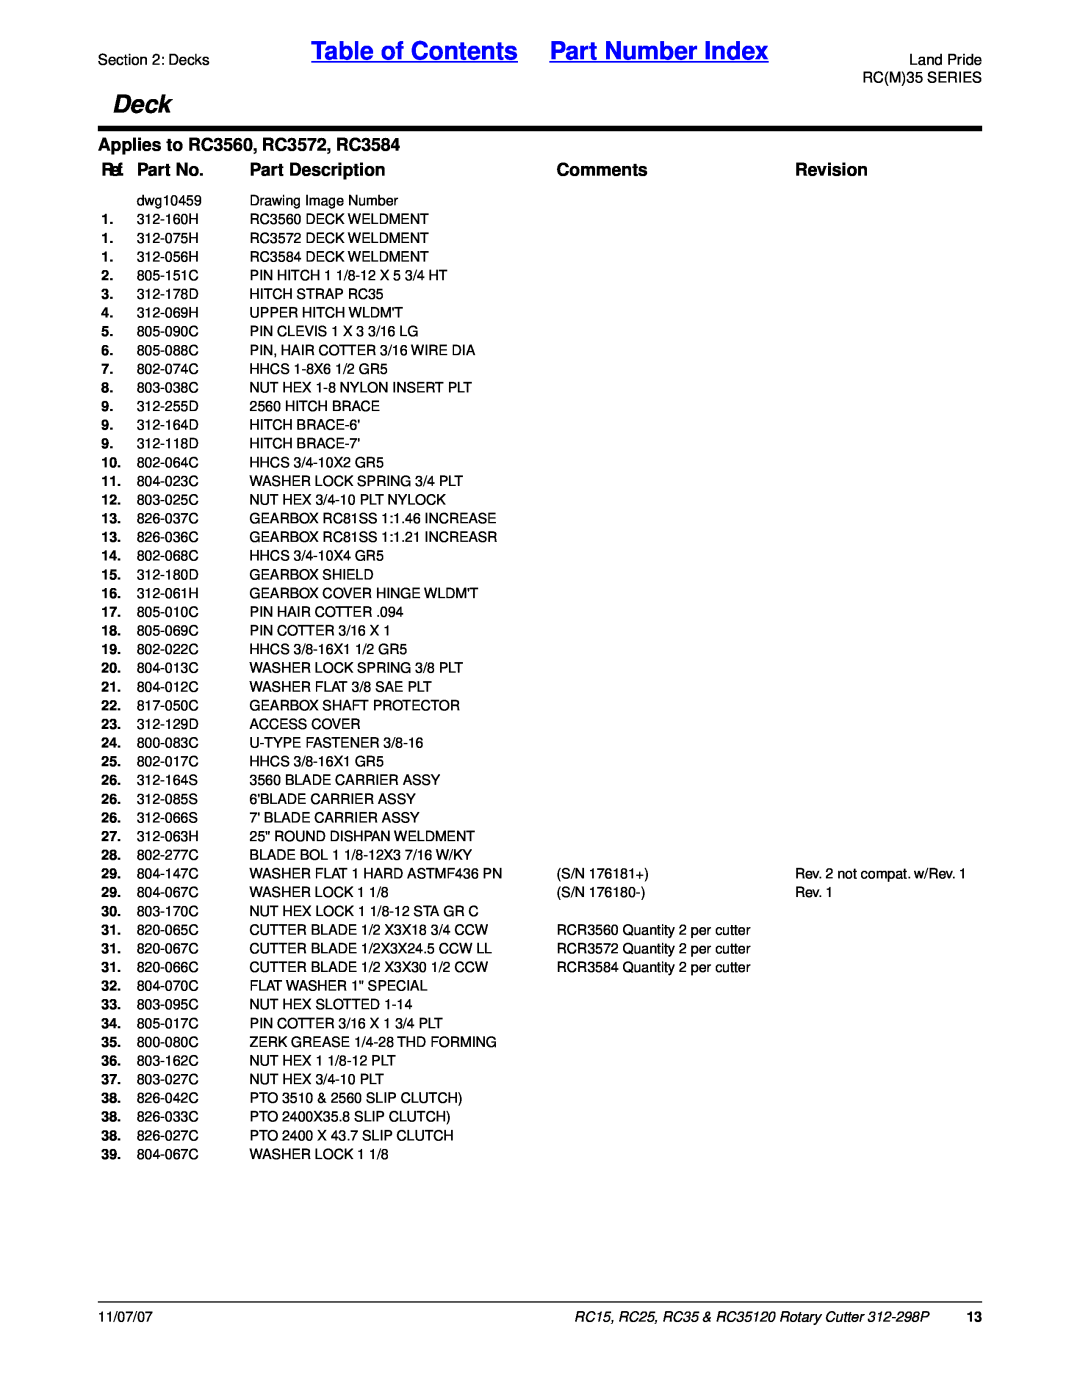 Land Pride Table of Contents Part Number Index, Deck, Applies to RC3560, RC3572, RC3584, Ref. Part No, Part Description 